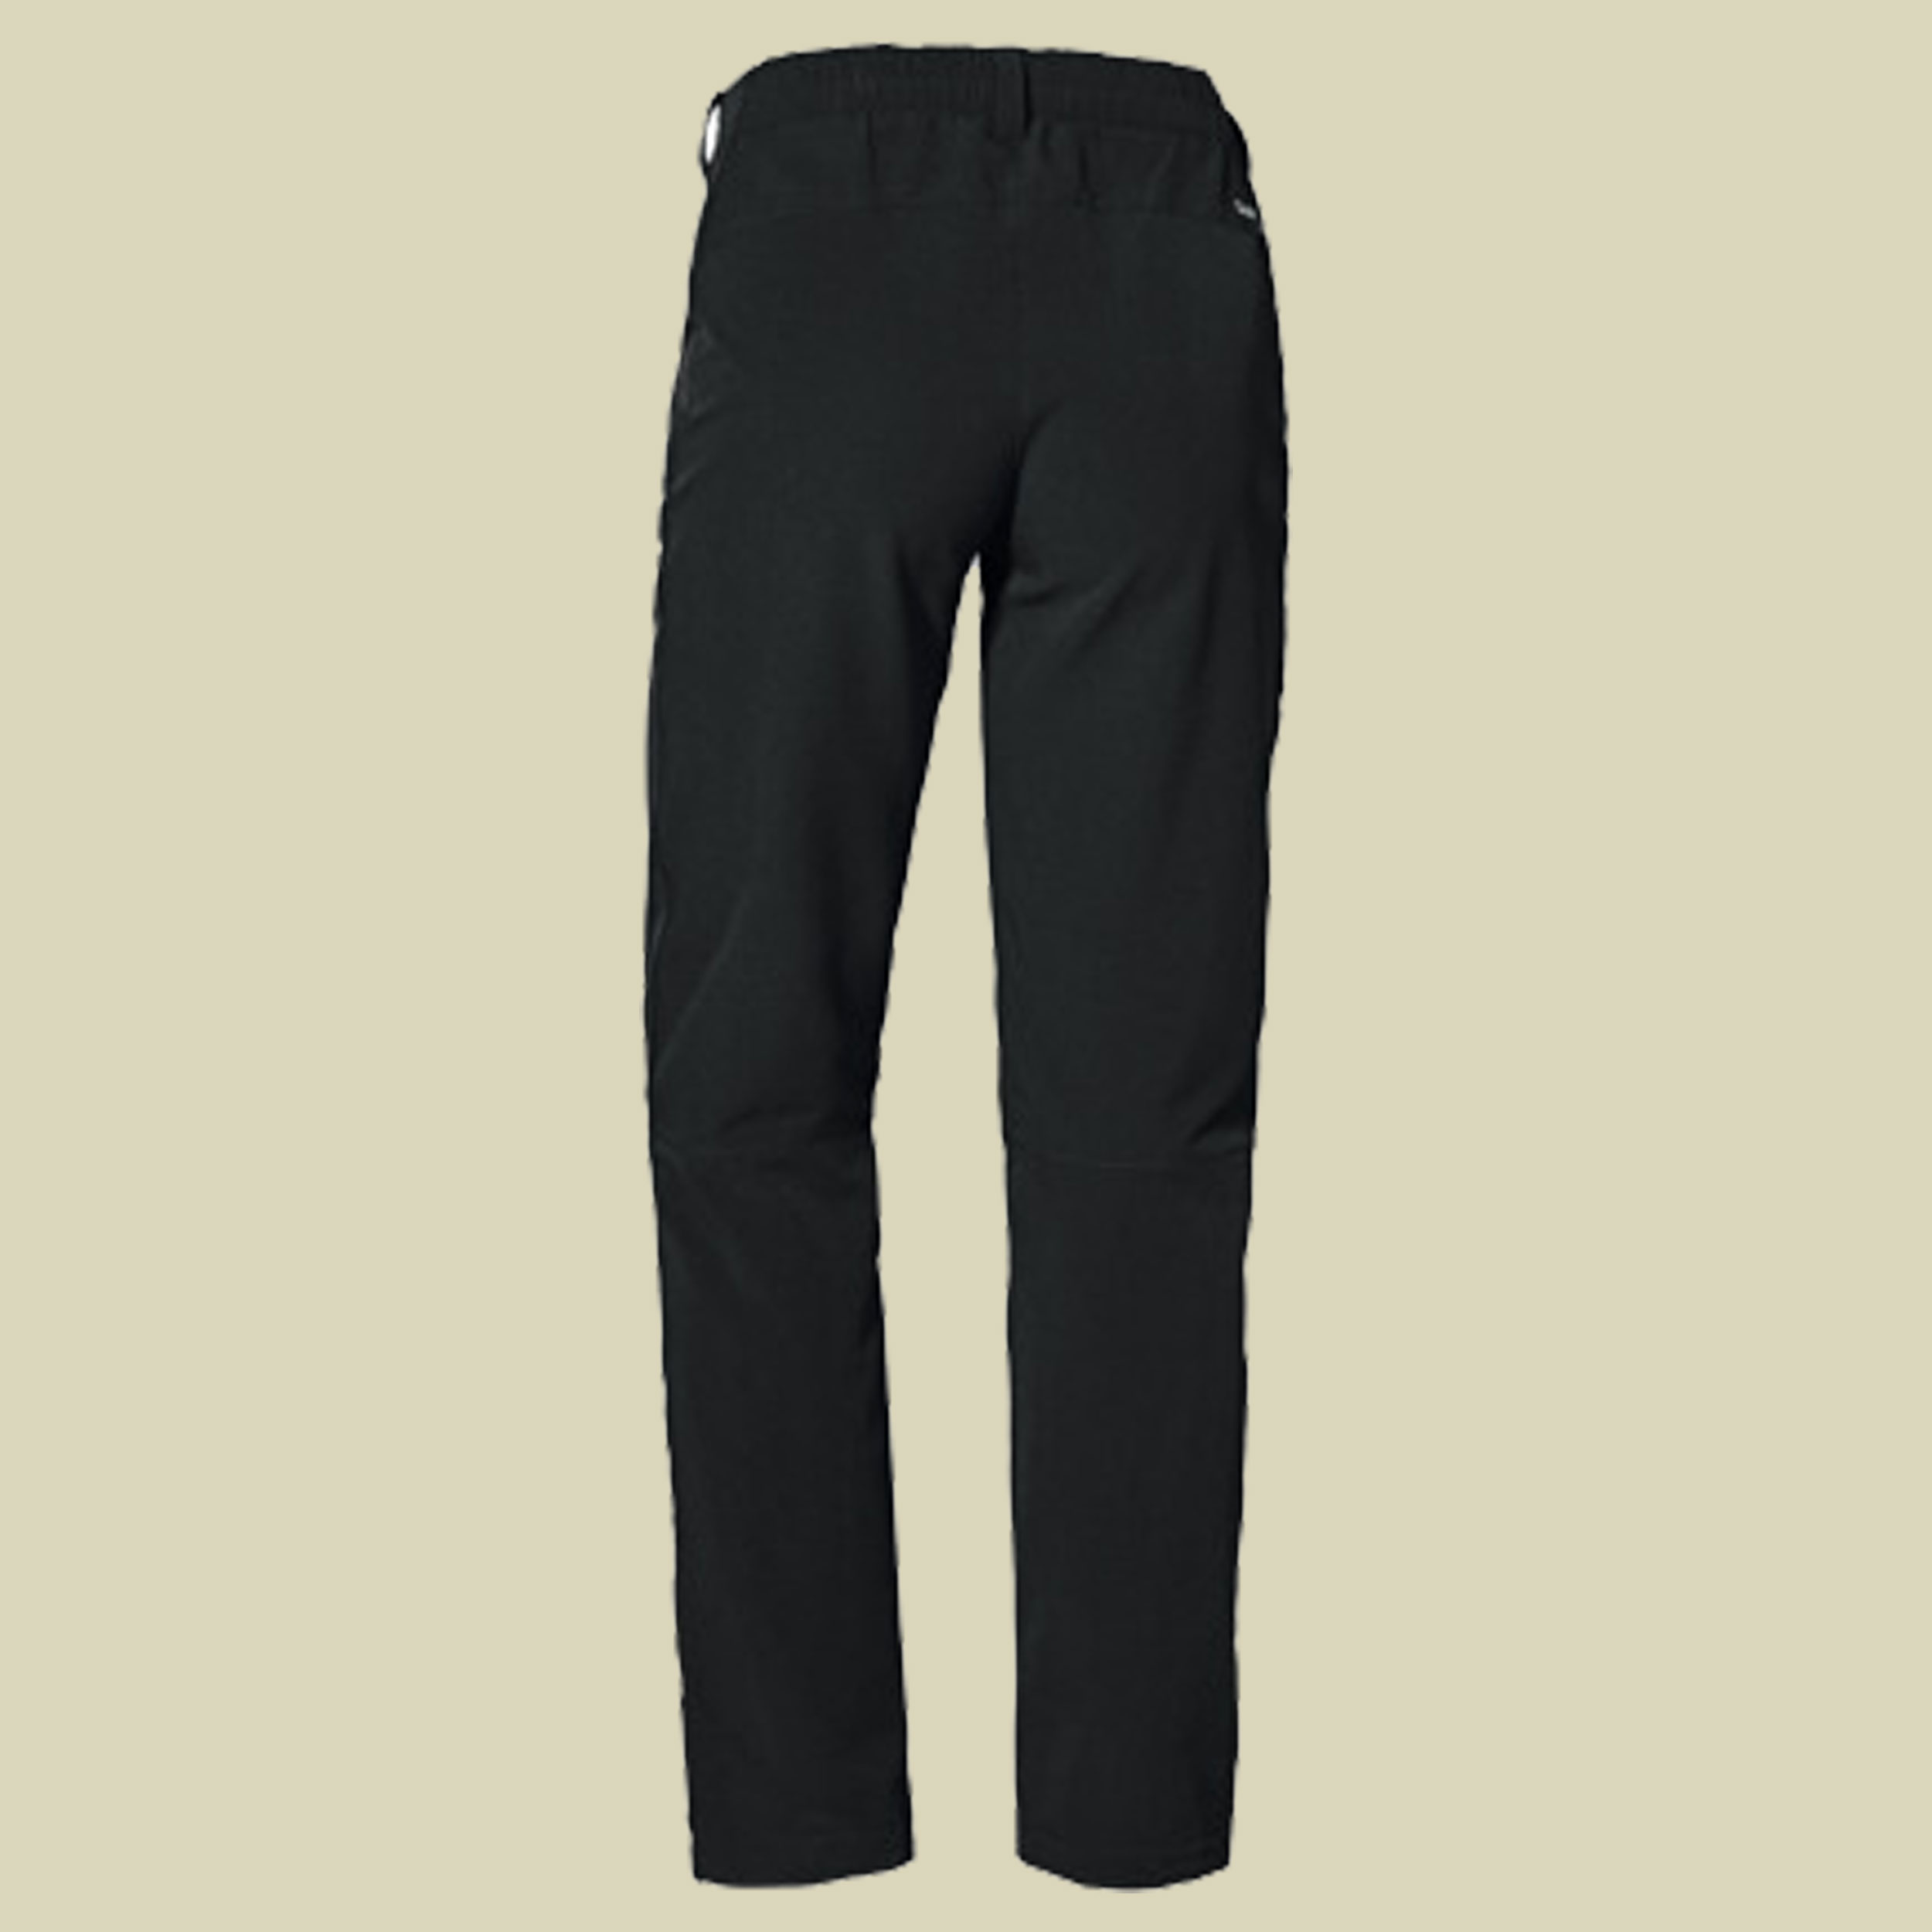 Pants Ascona Warm L Women Größe 18 Farbe black